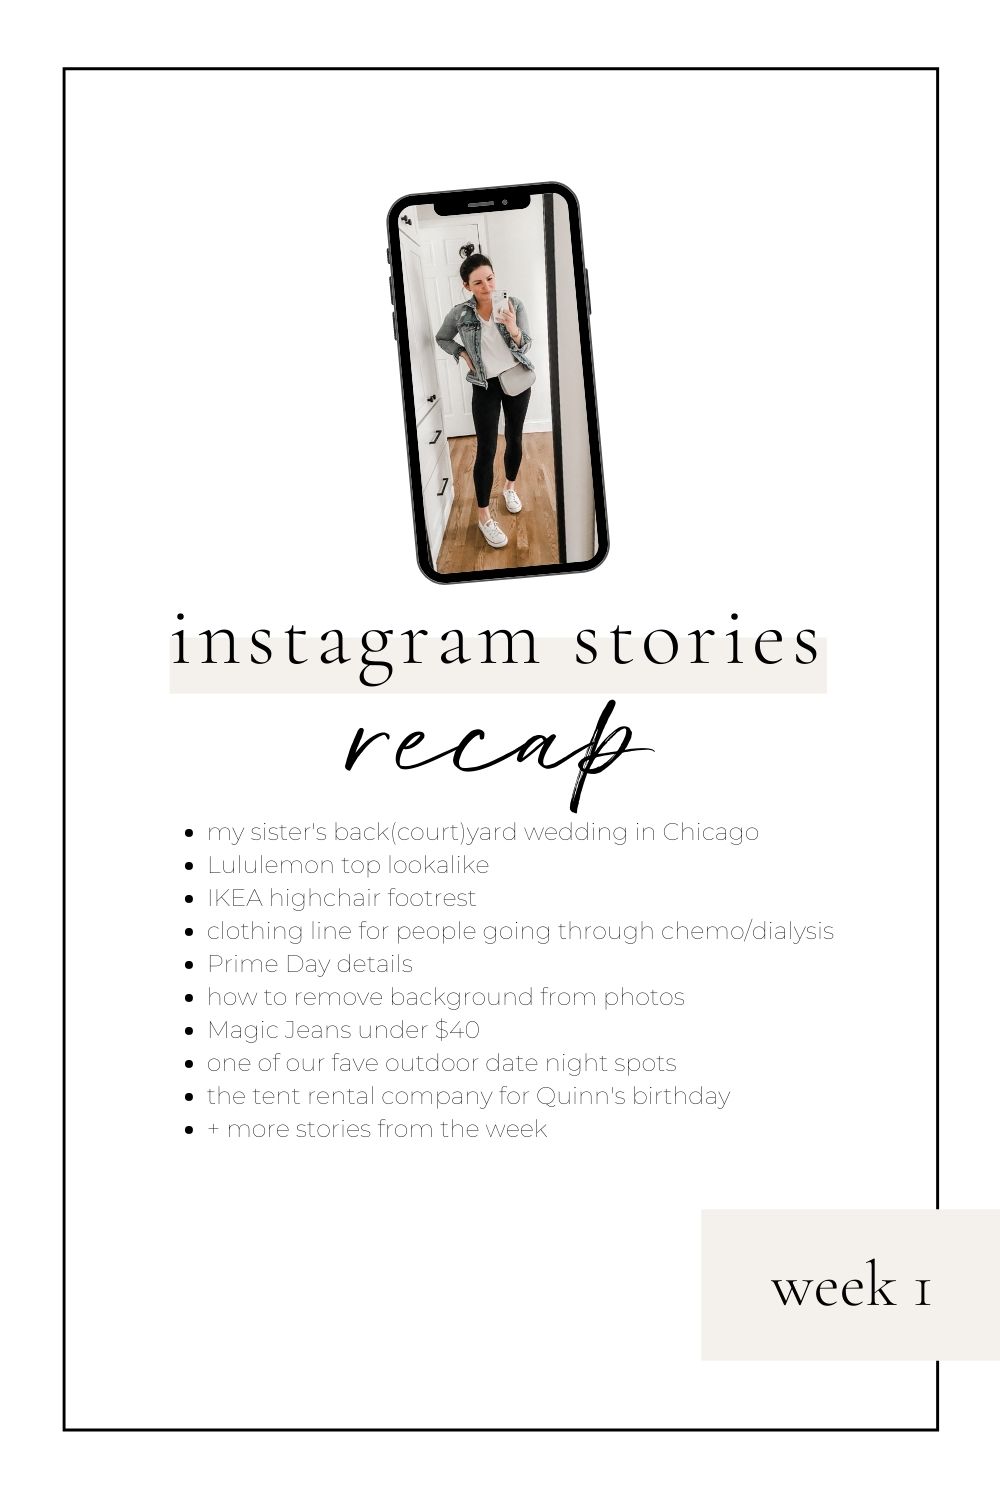 instagram stories week 1